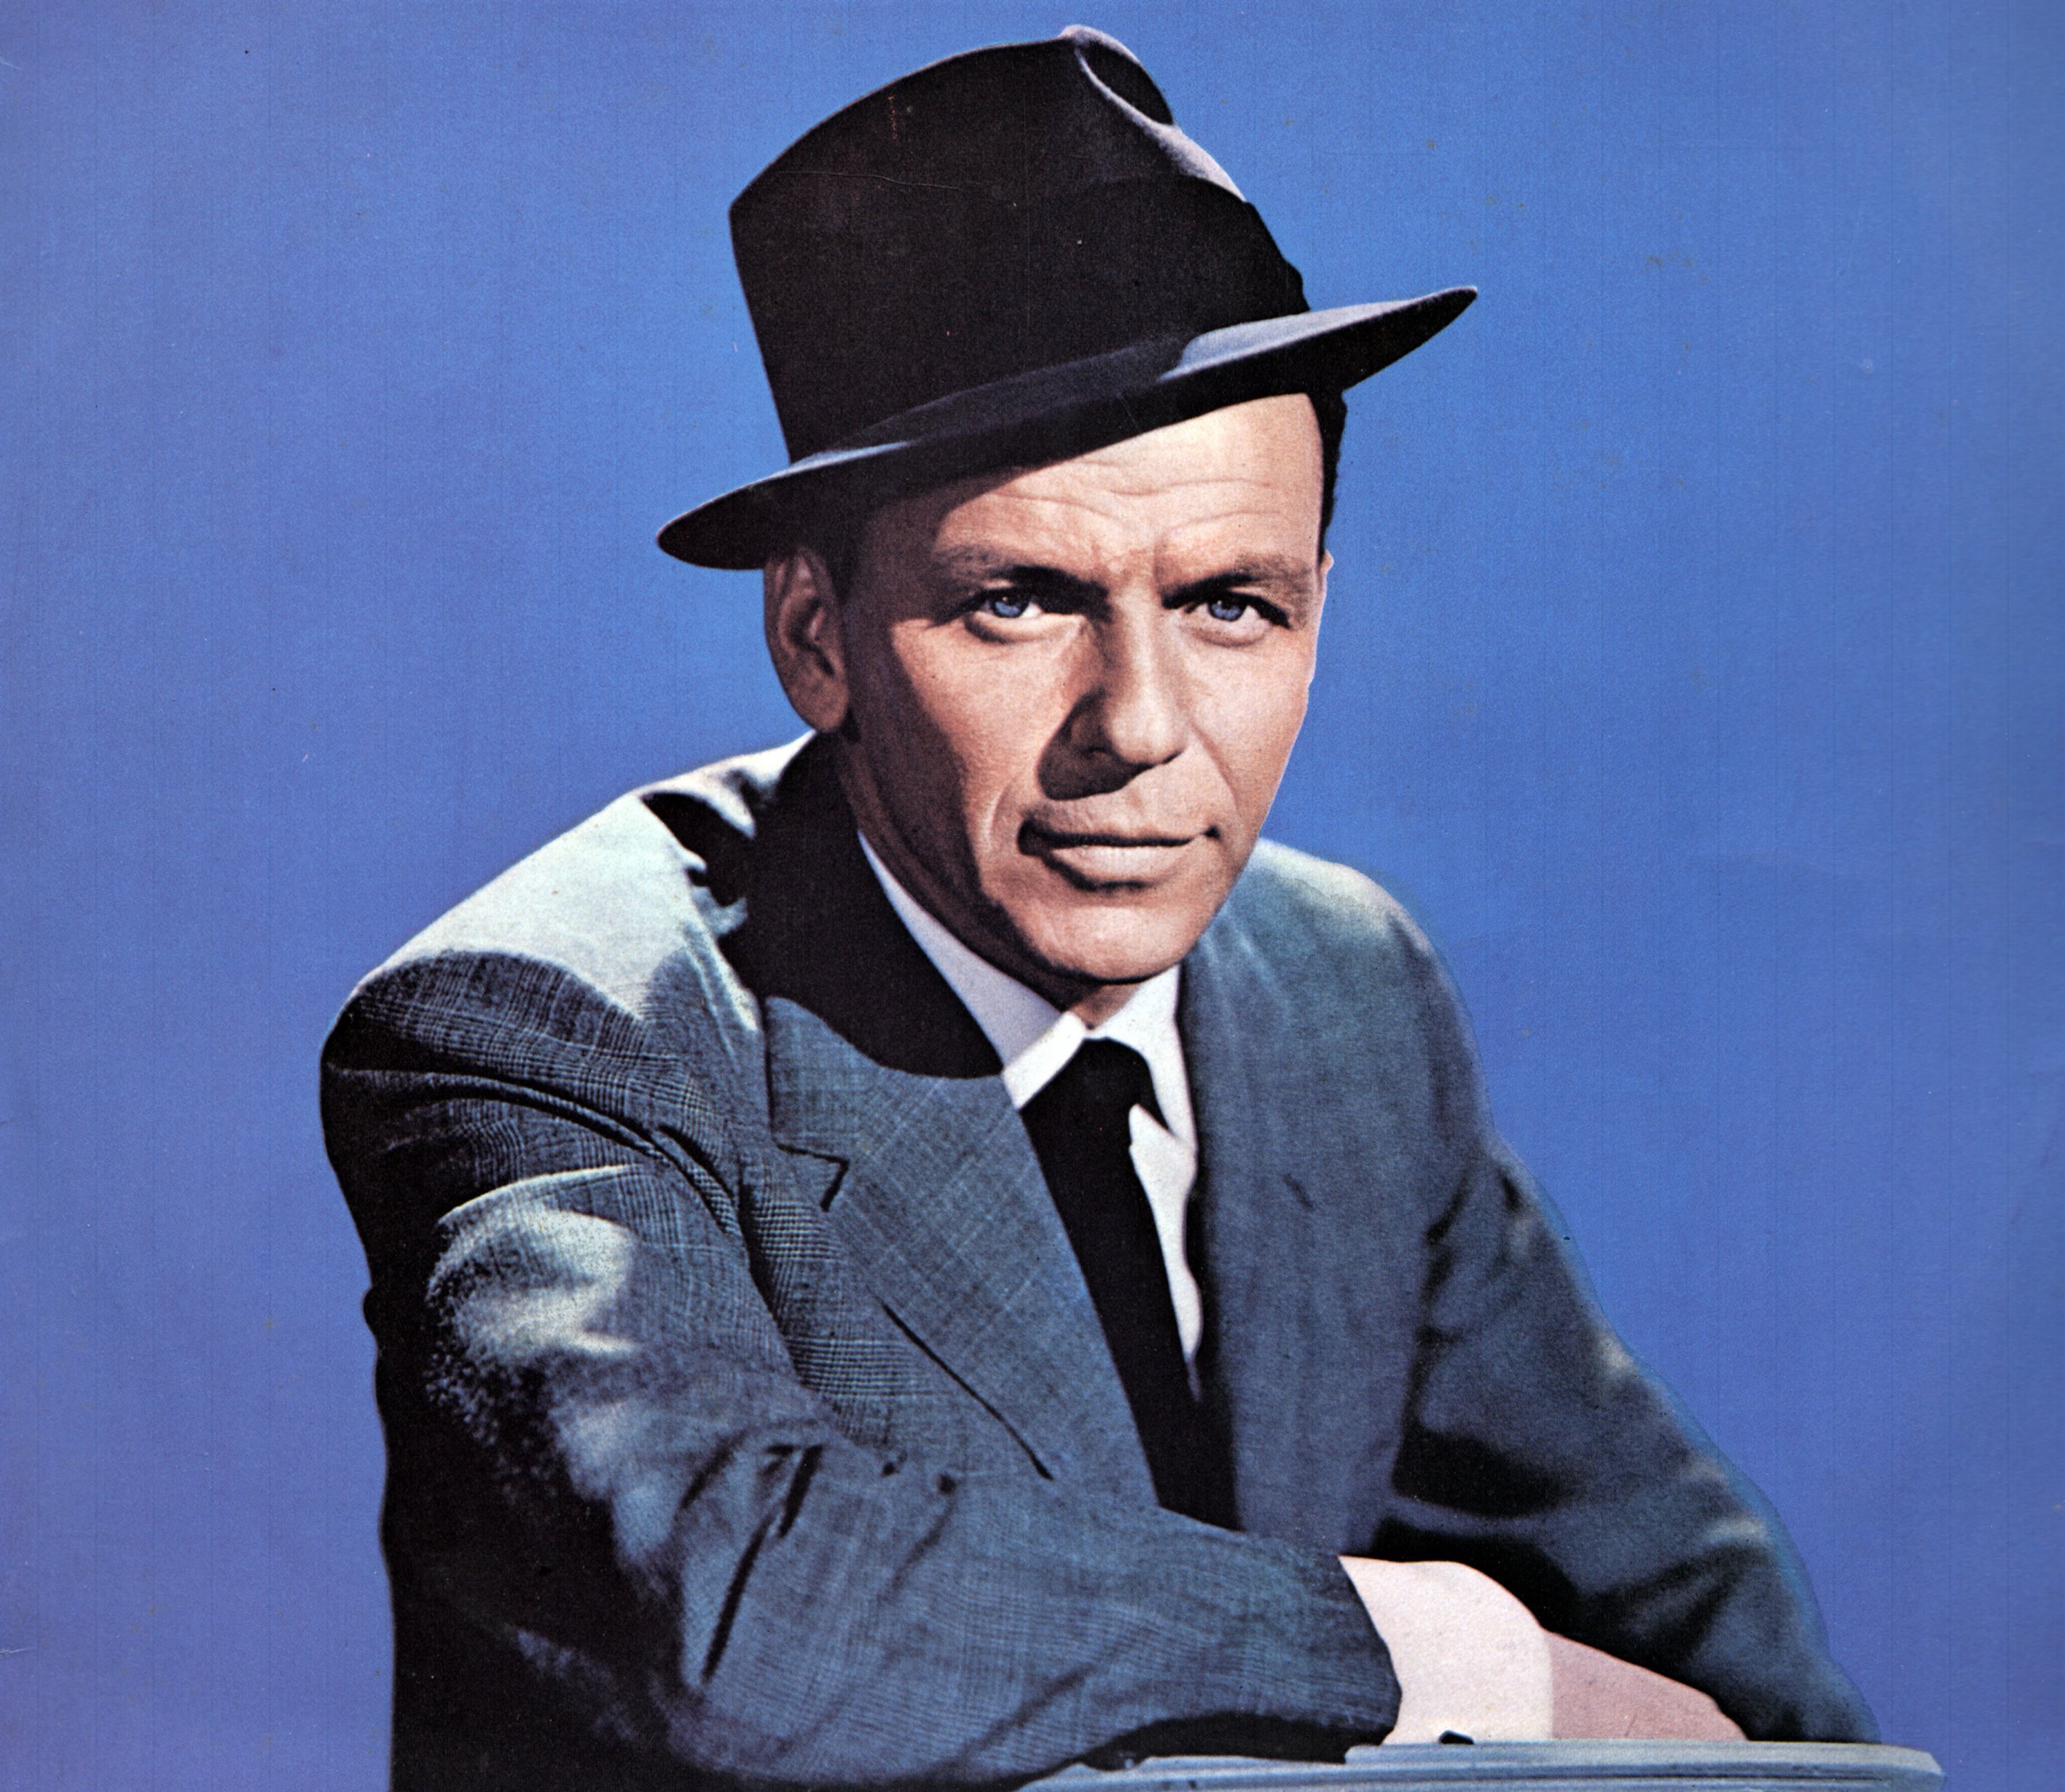 Frank Sinatra wearing a hat